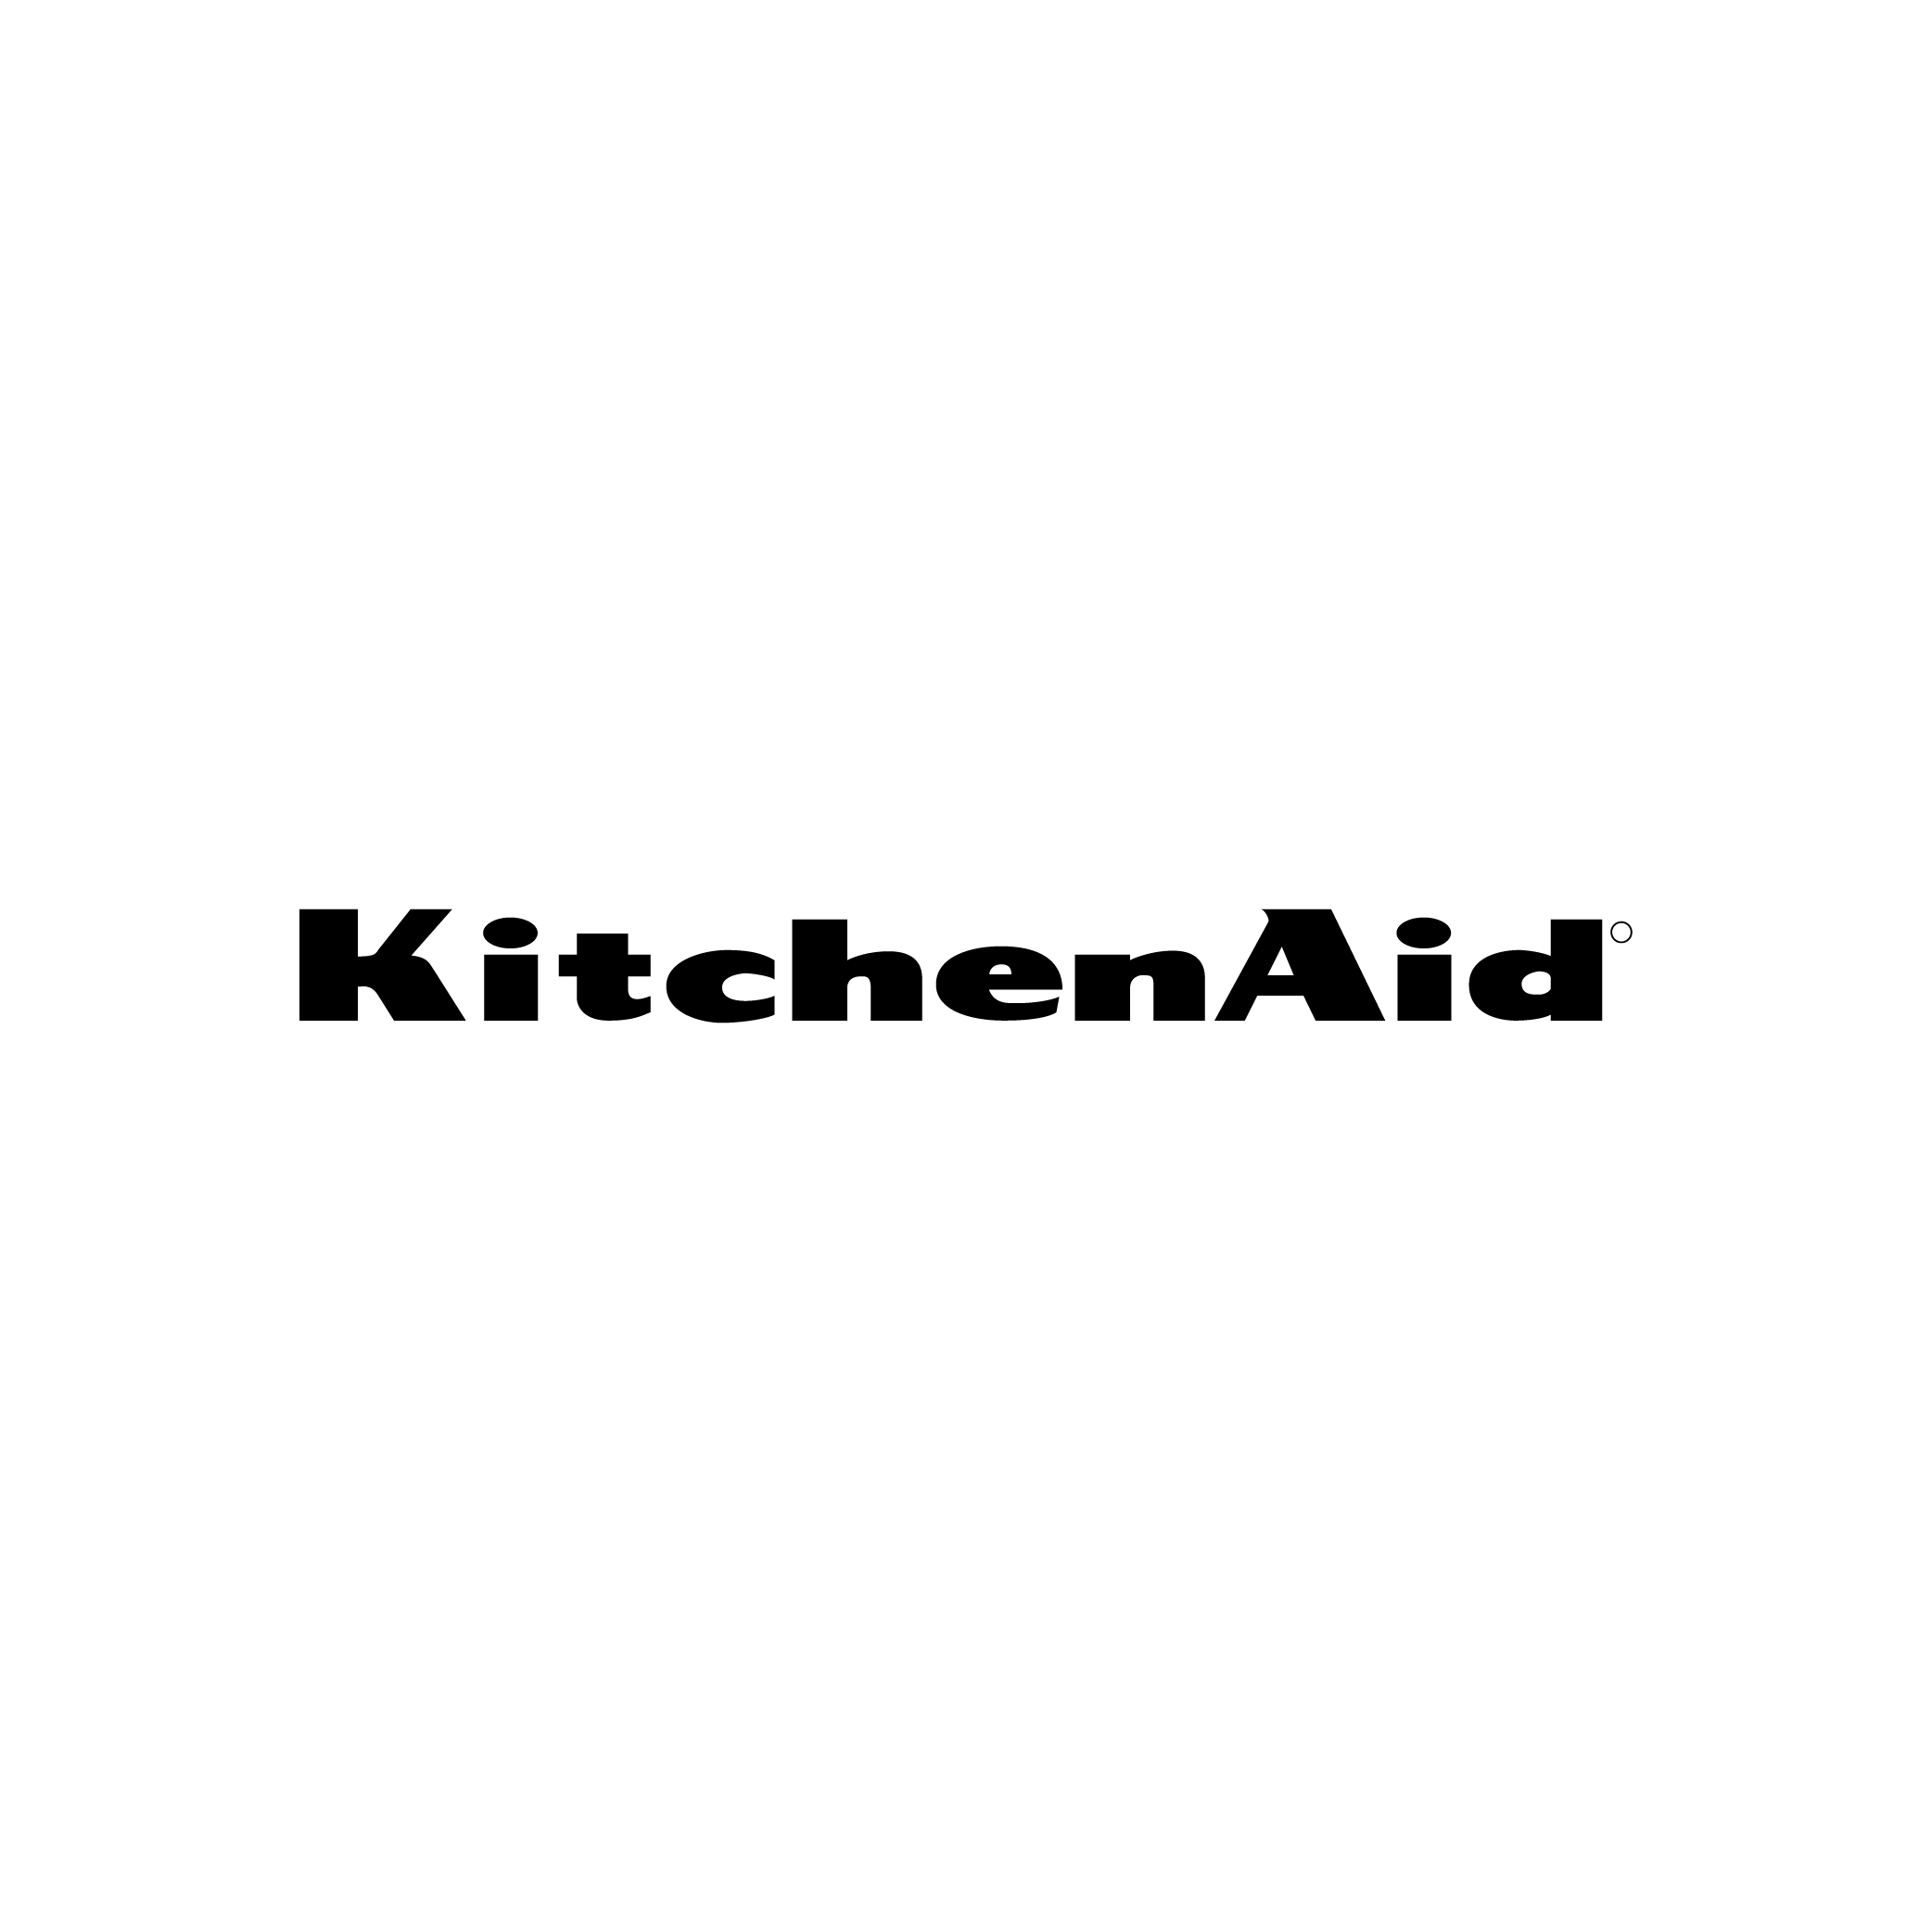  KitchenAid Appliances Logo 